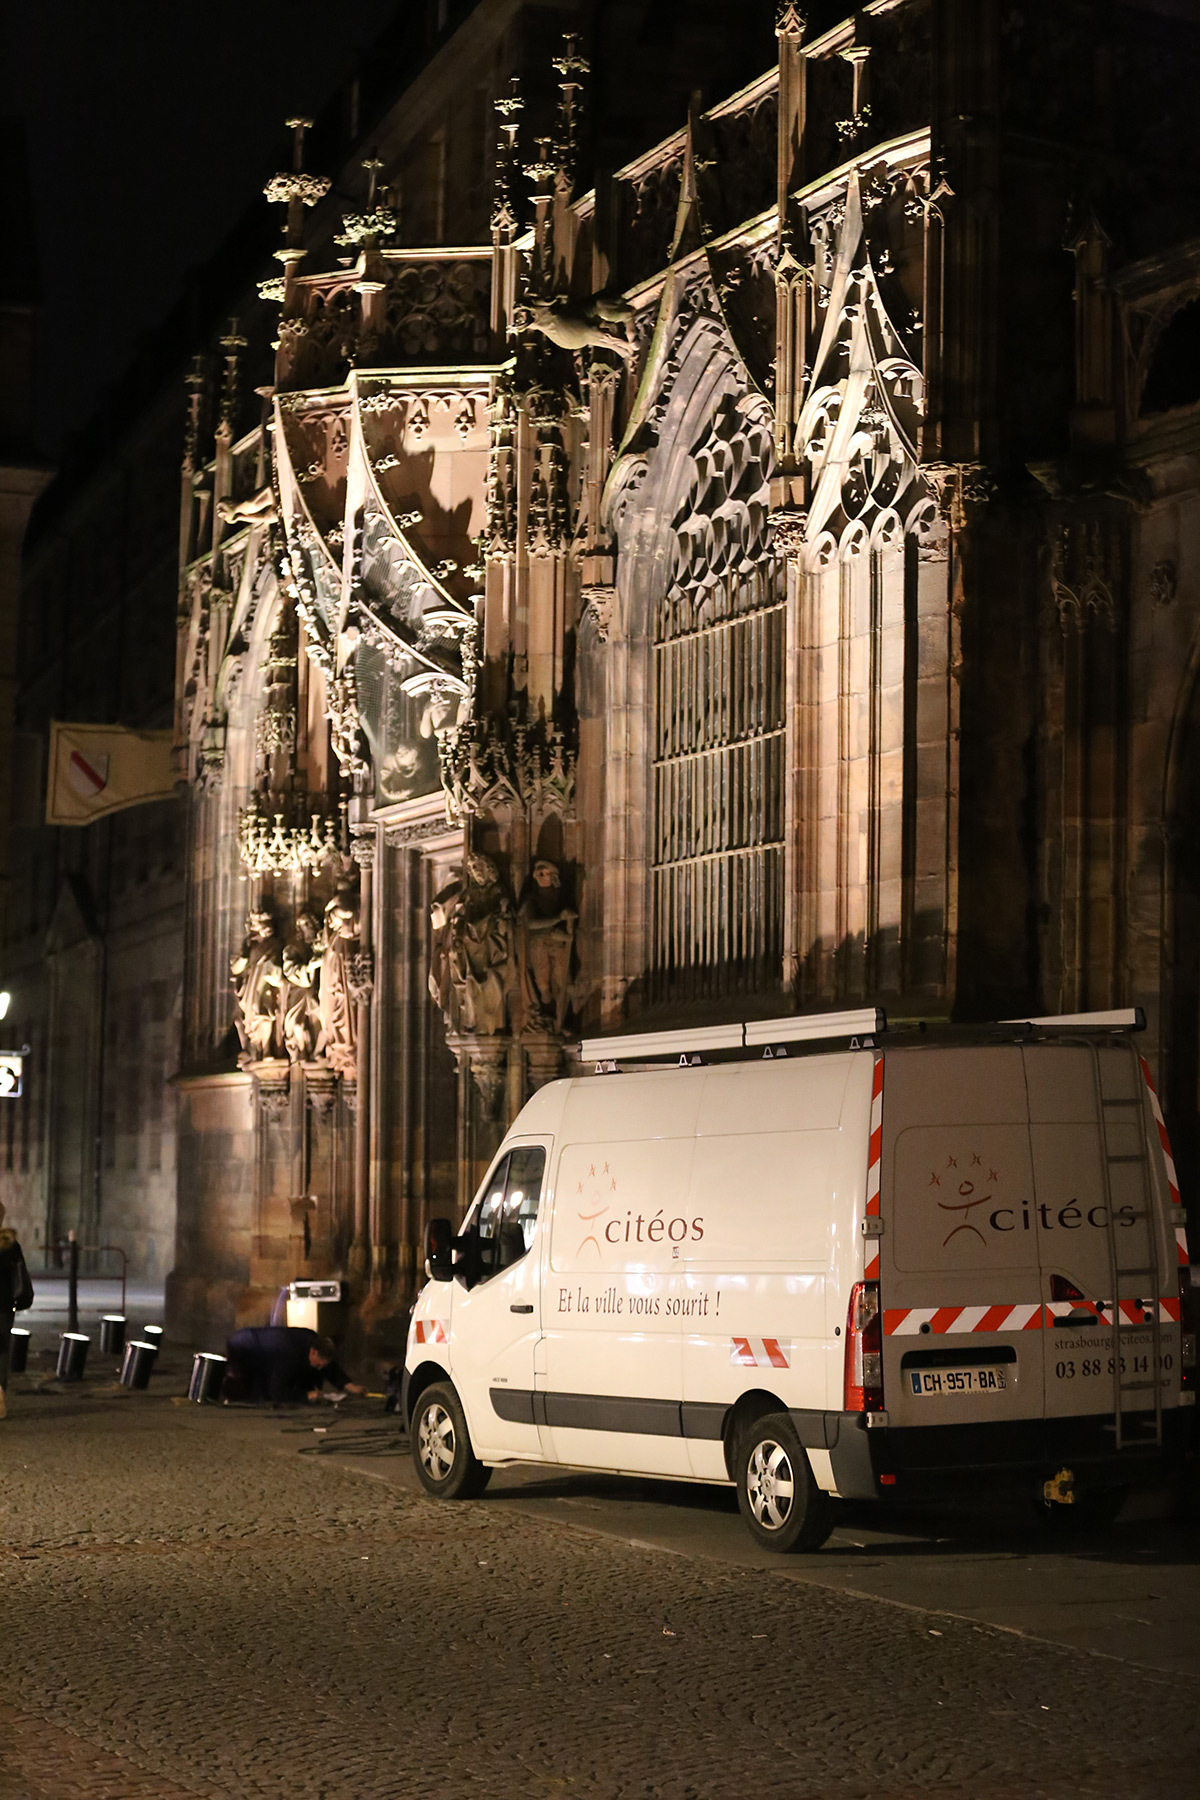 Cathédrale de Strasbourg, France - test et essai d'éclairage avec L'Acte Lumière et Citeos - 10 février 2016 - Photo : Vincent Laganier